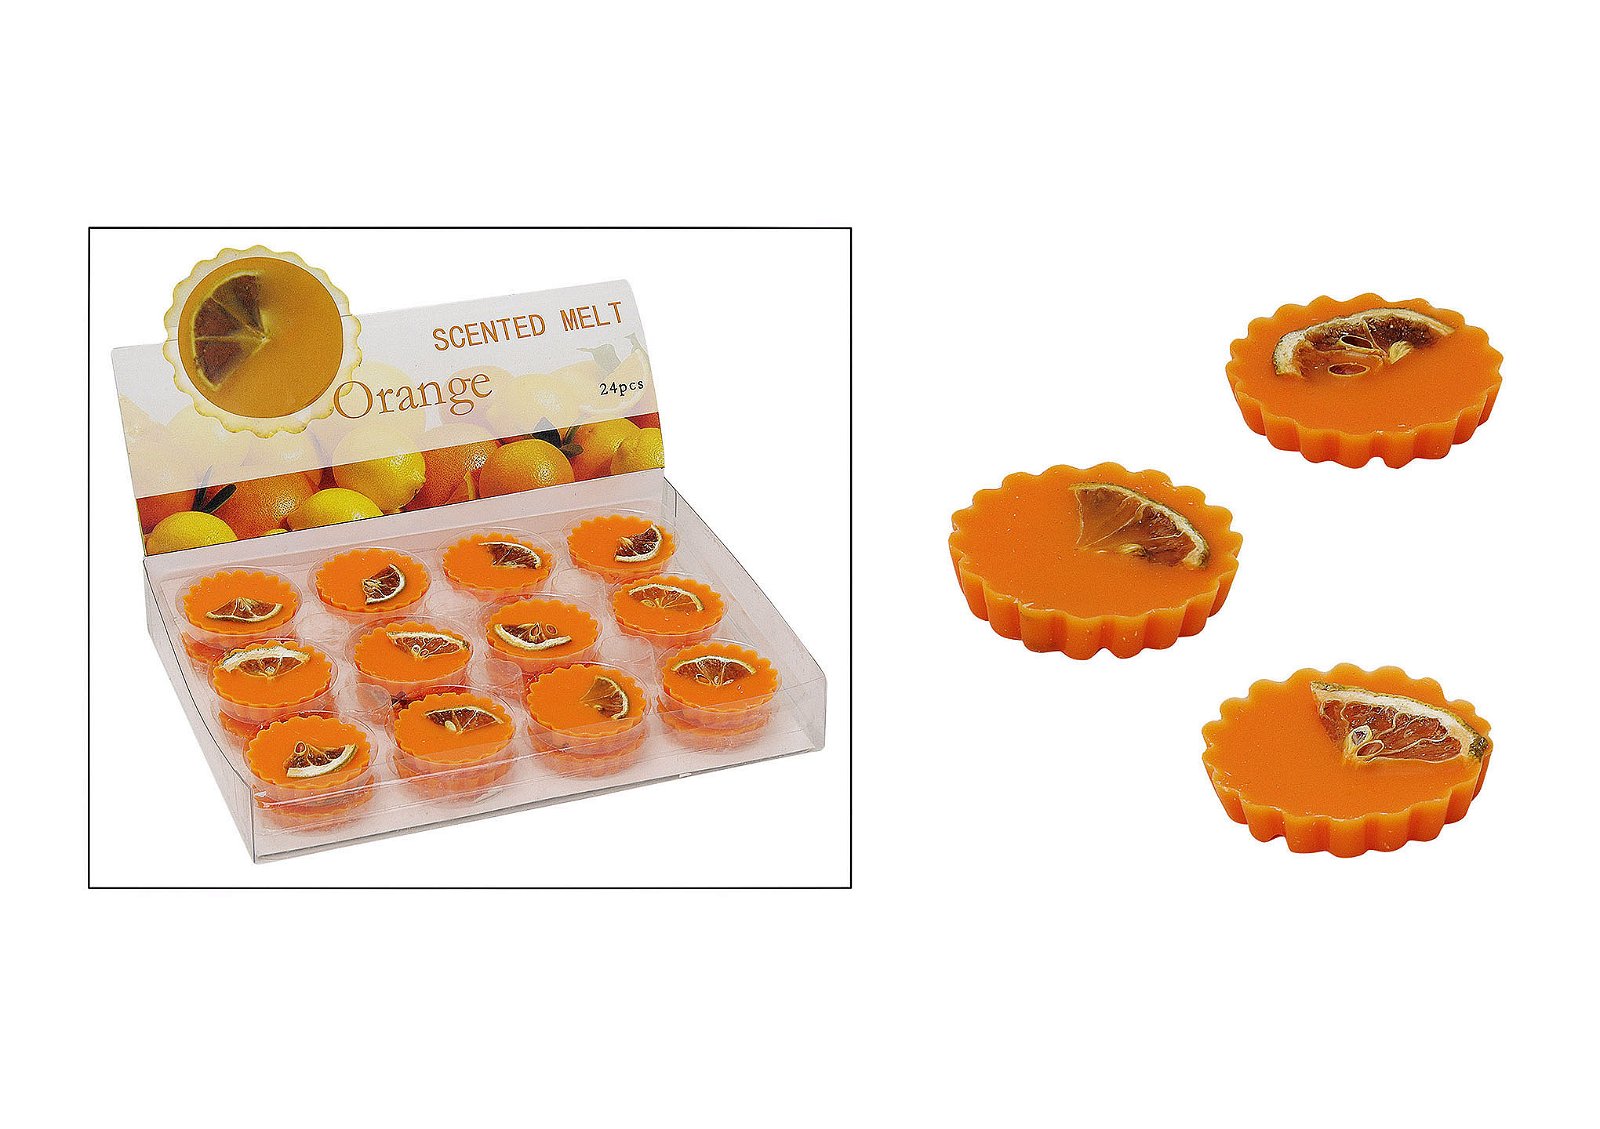 Cire parfumée orange pour diffuseur de parfum, env. 15g, 5 cm de diamètre